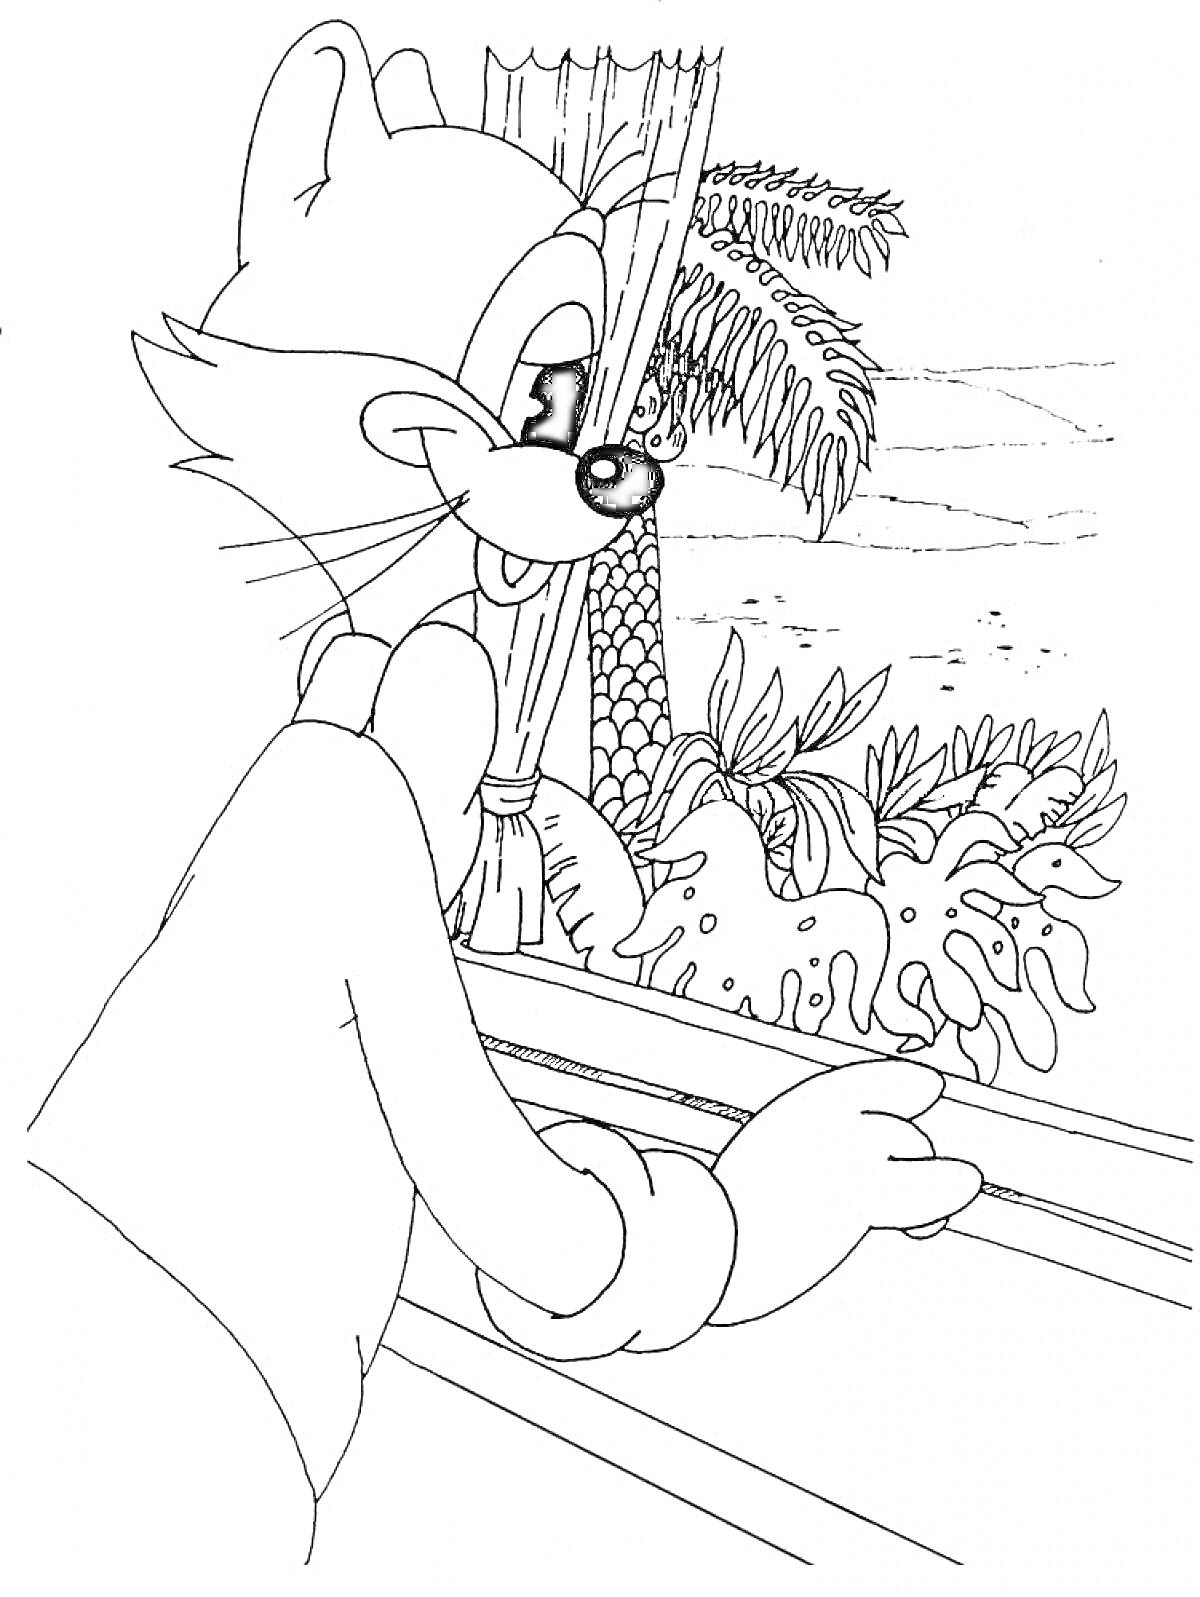 Раскраска Кот Леопольд у окна, смотрящий на пальму и кустарники за окном